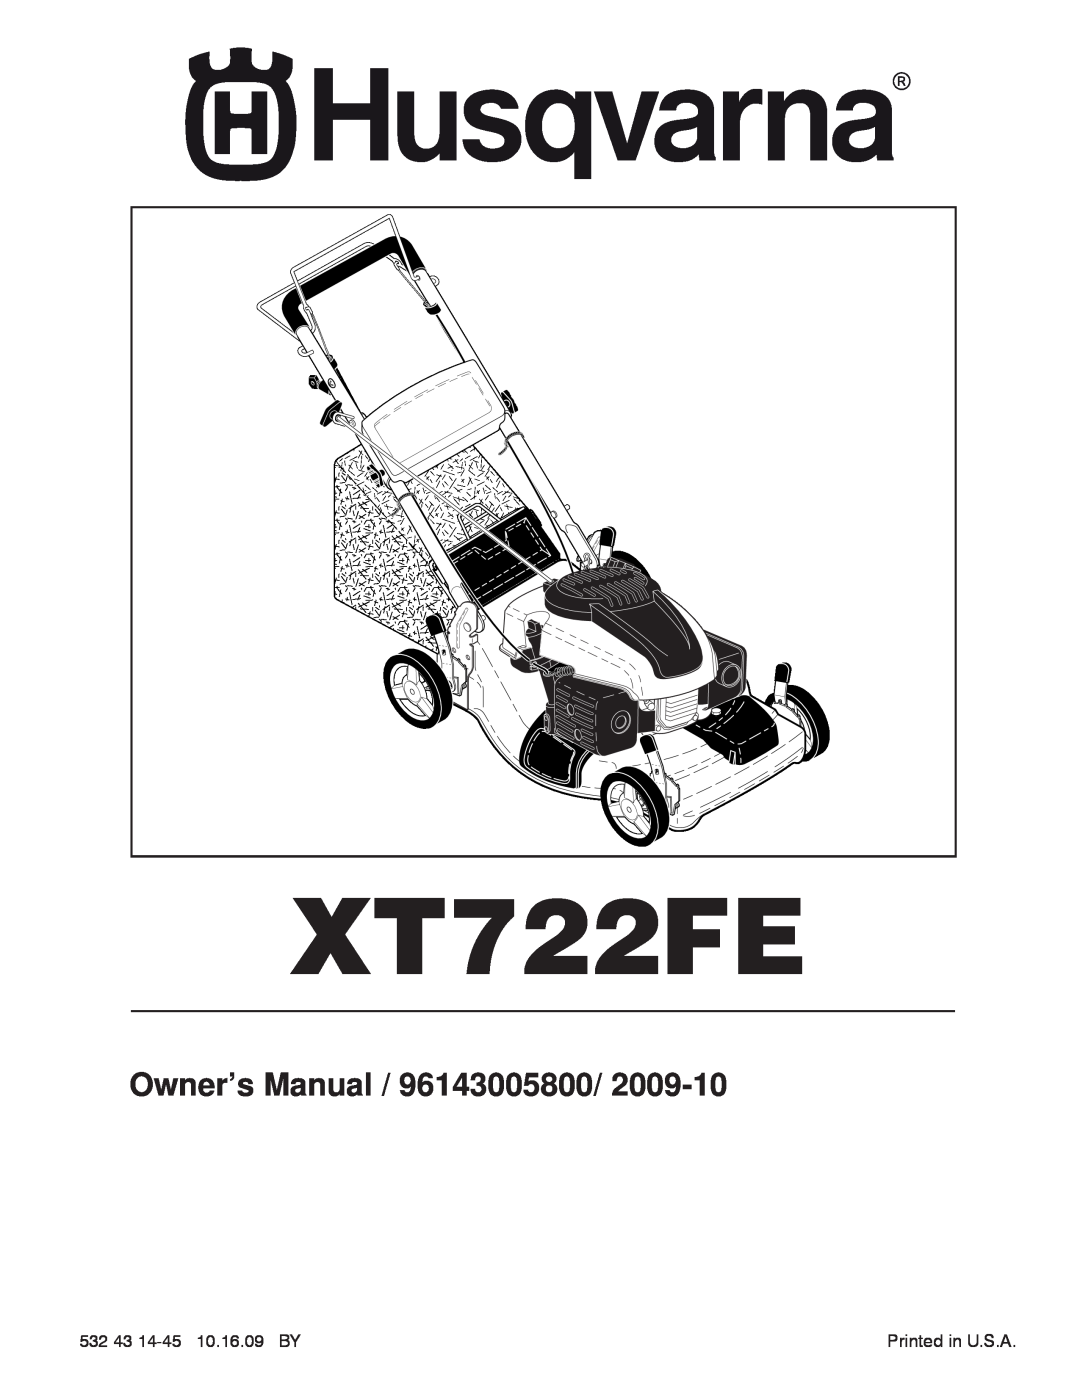 Husqvarna XT722FE manual Operator’s Manual 